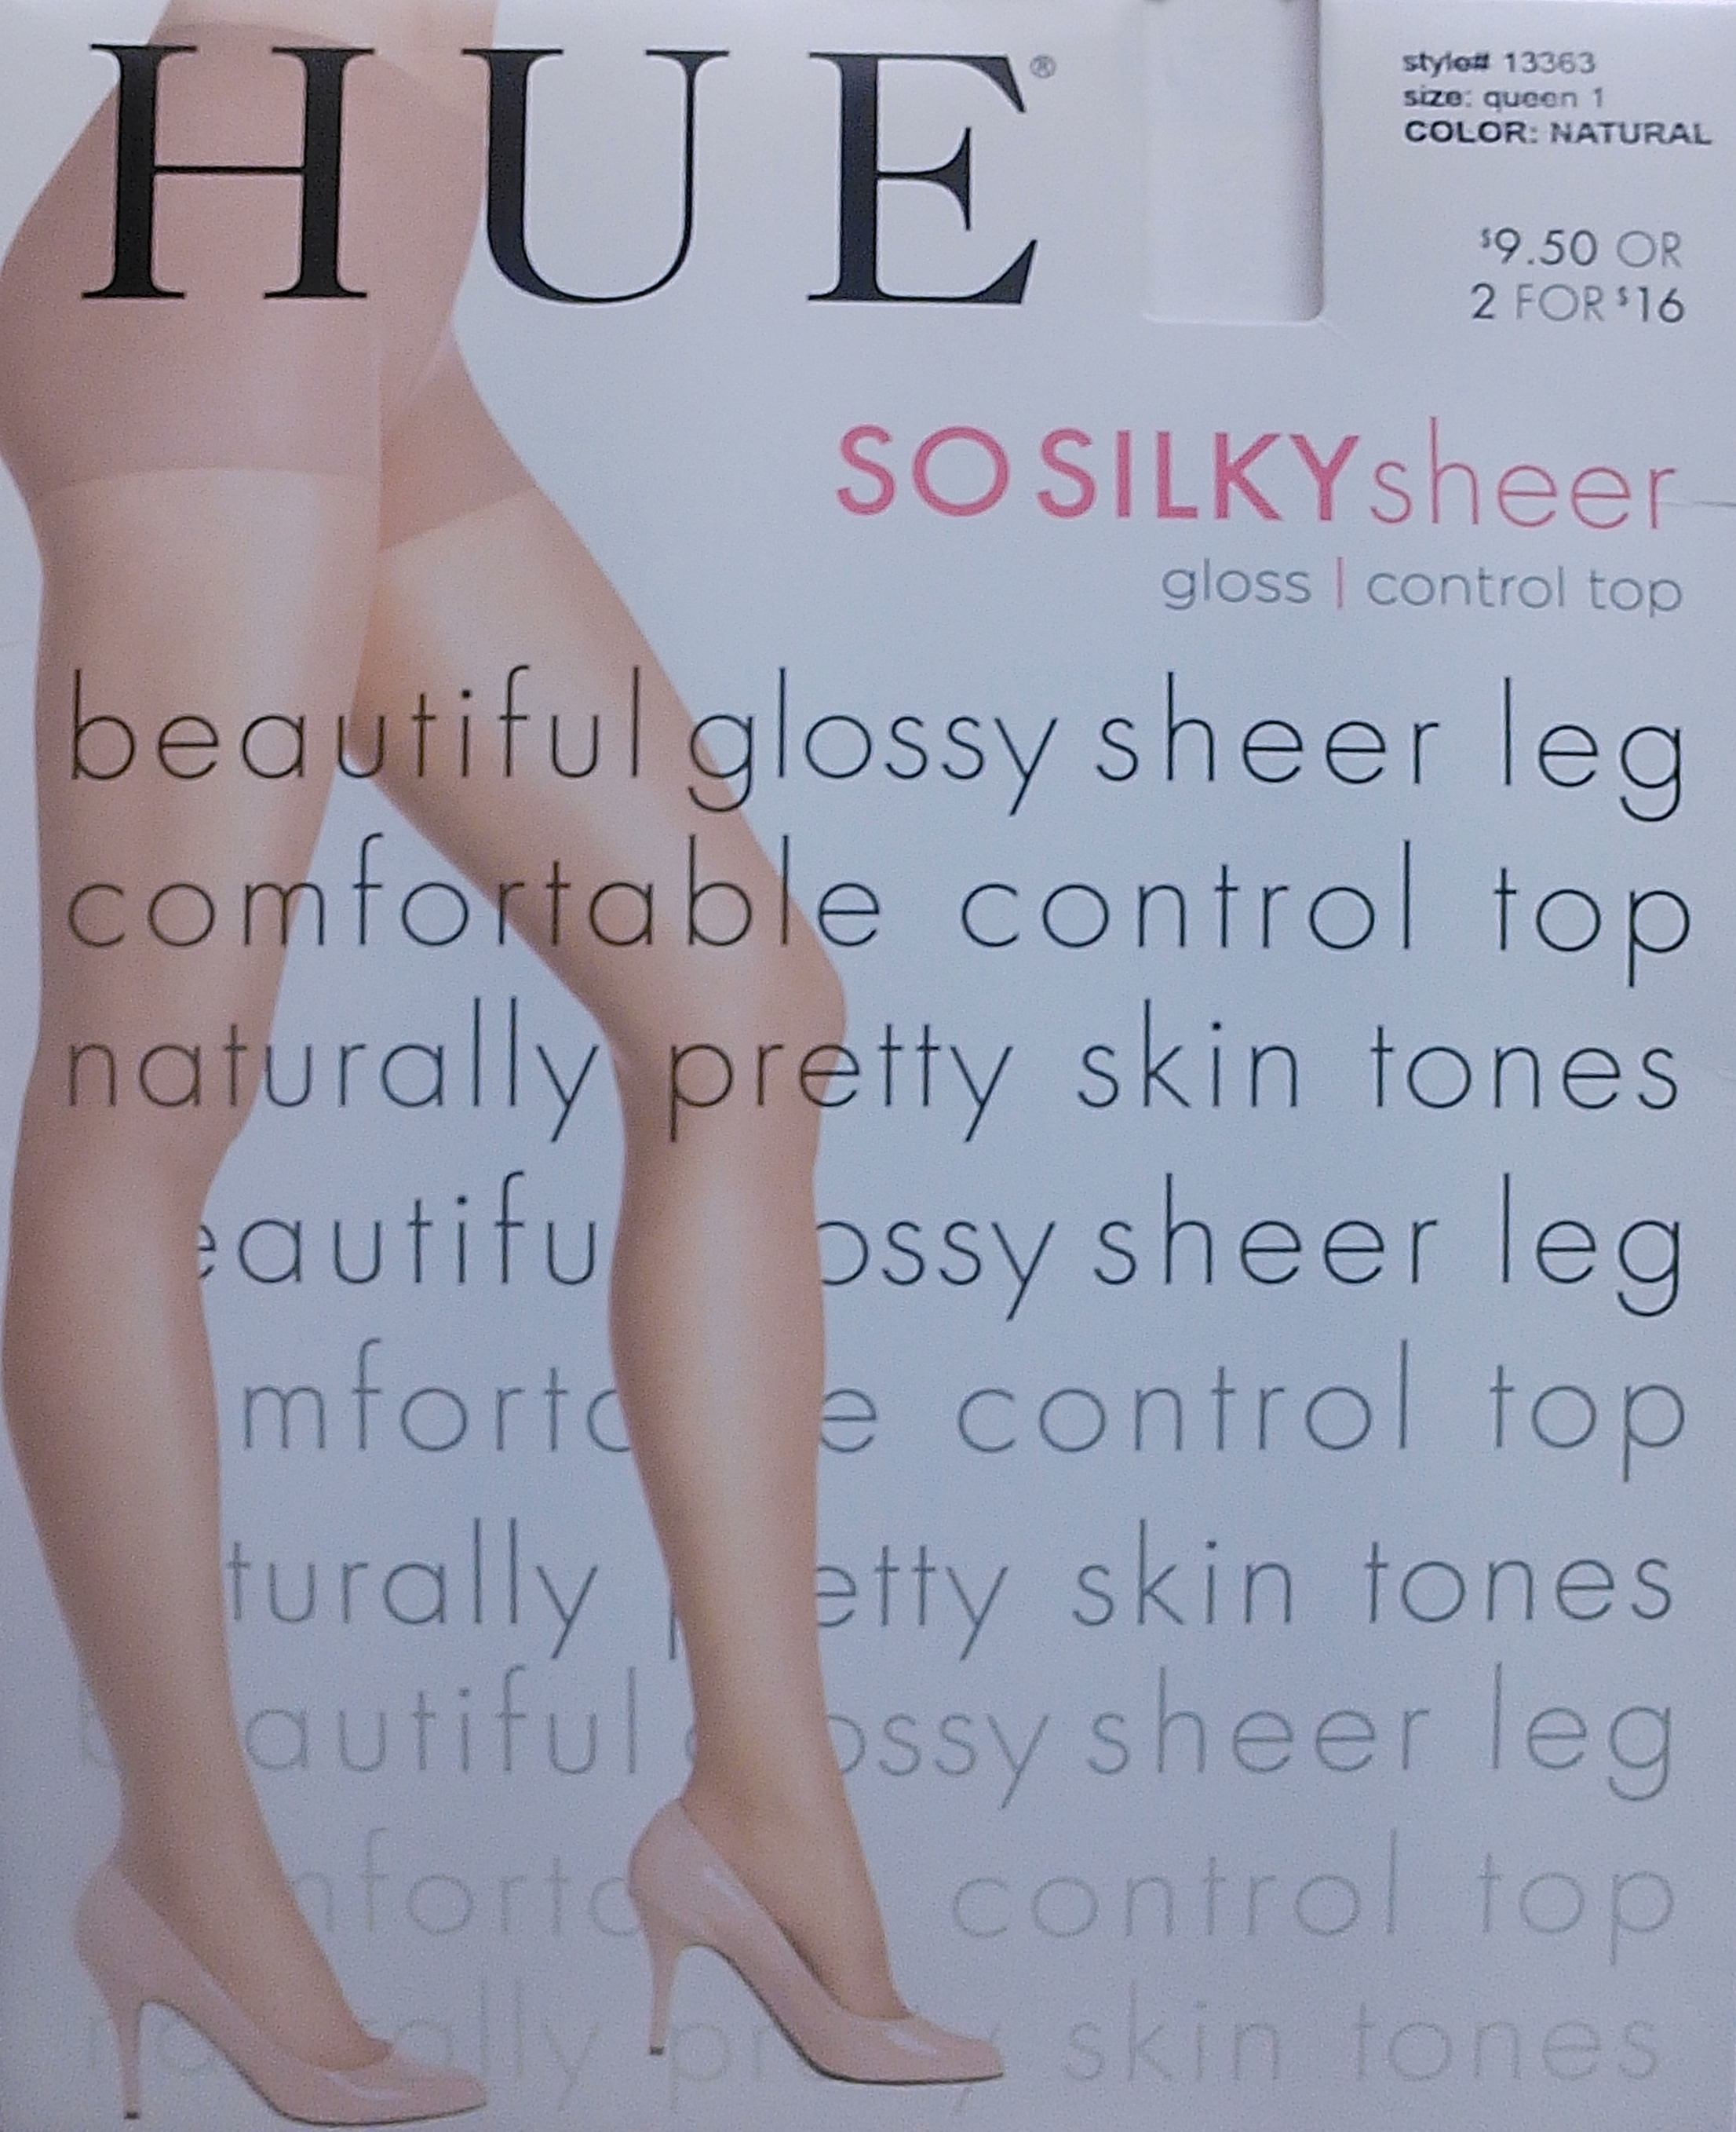 HUE So Silky Sheer Gloss Pantyhose Review